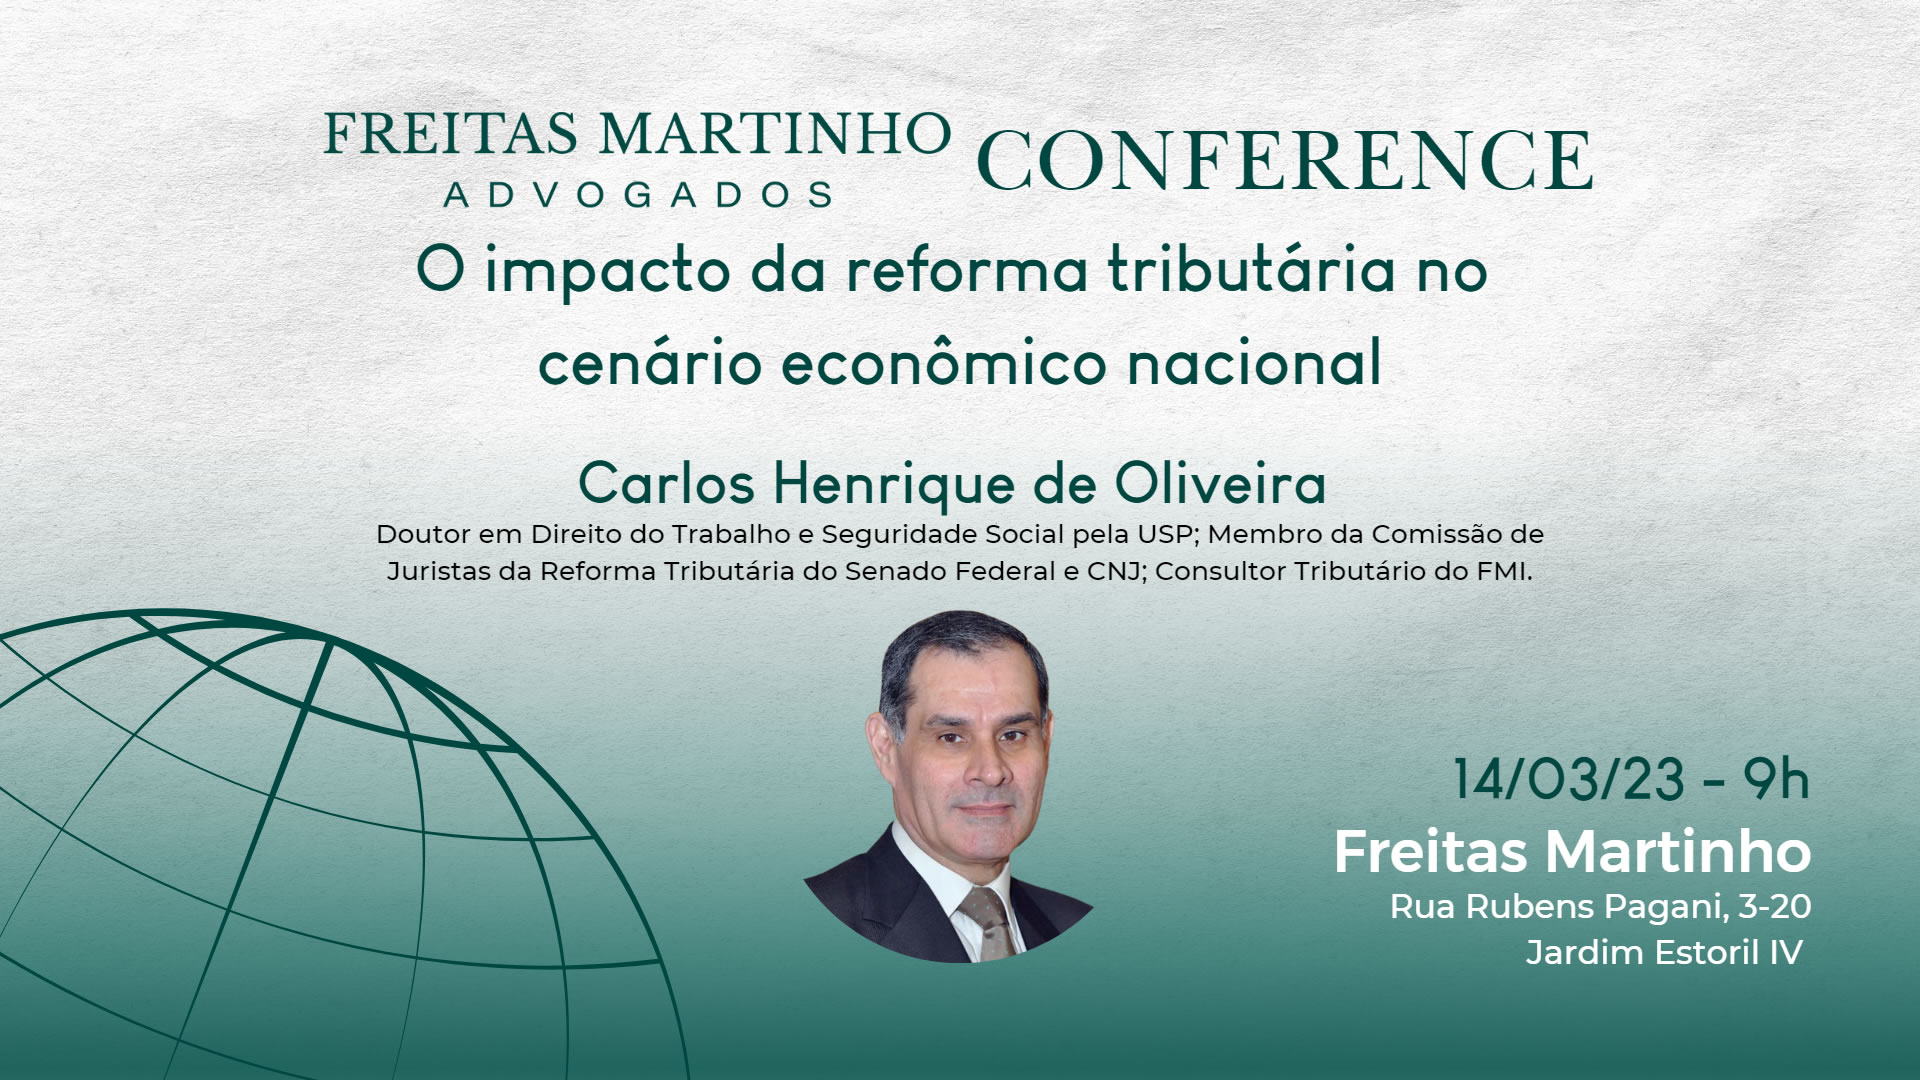 Conference Freitas Martinho Horizontal 3